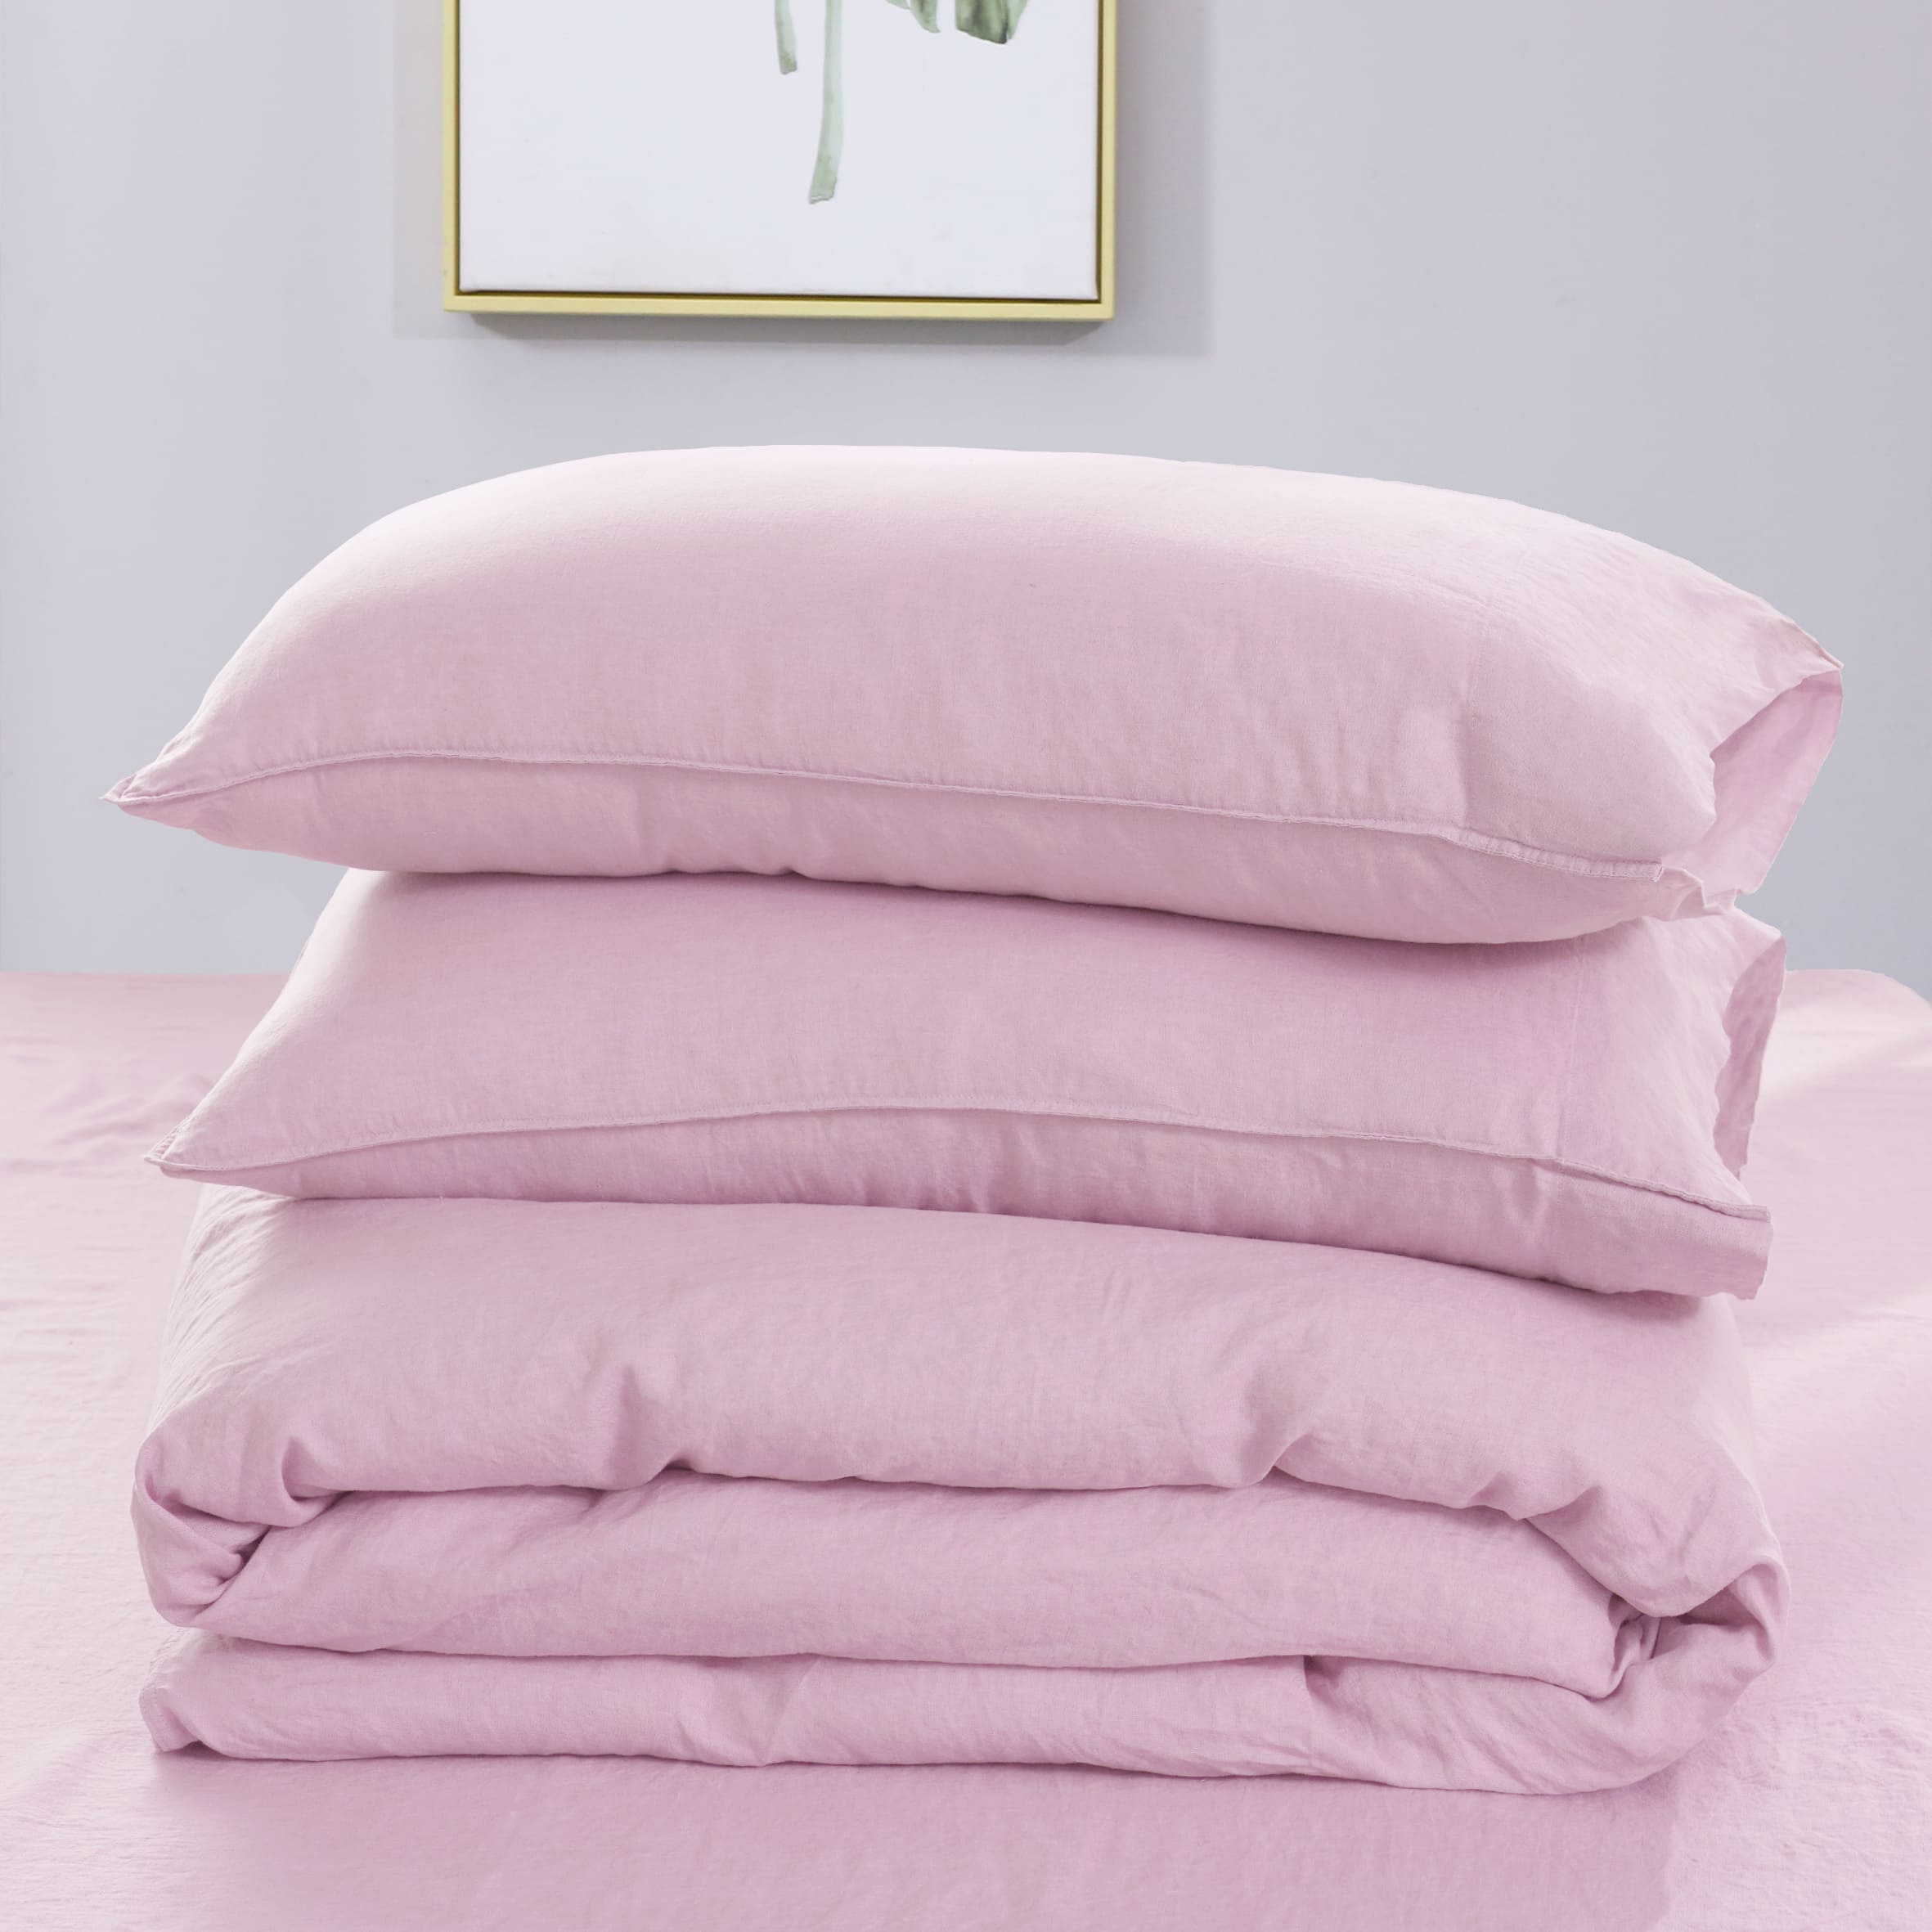 soft-pink-linen-fitted-sheet-linen-time-2